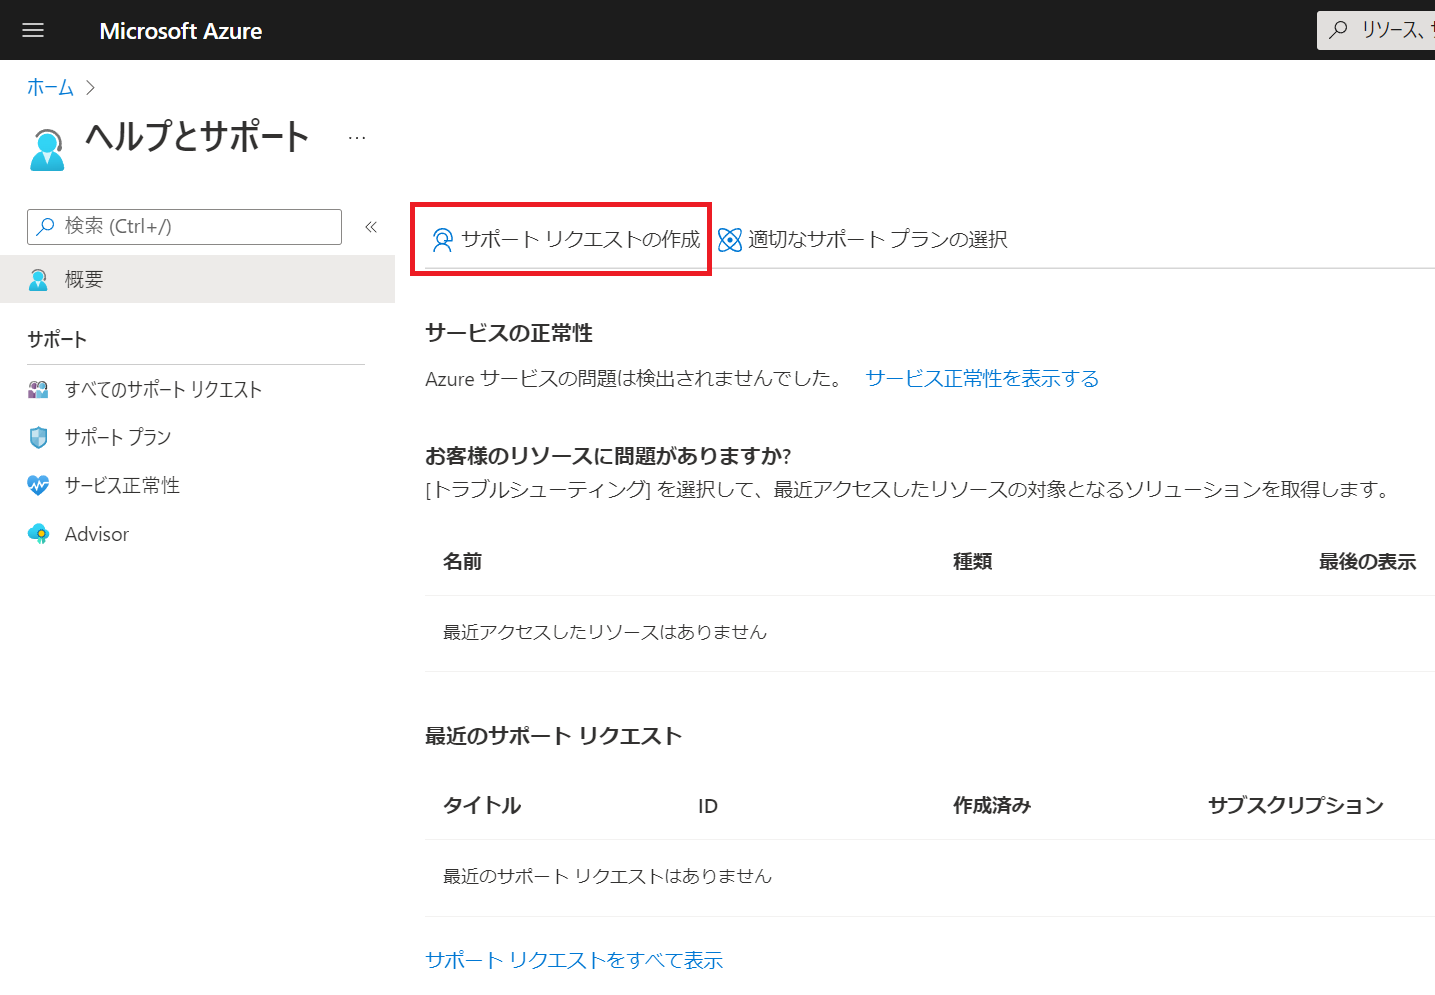 お問い合わせの発行方法について | Japan Azure IaaS Core Support Blog